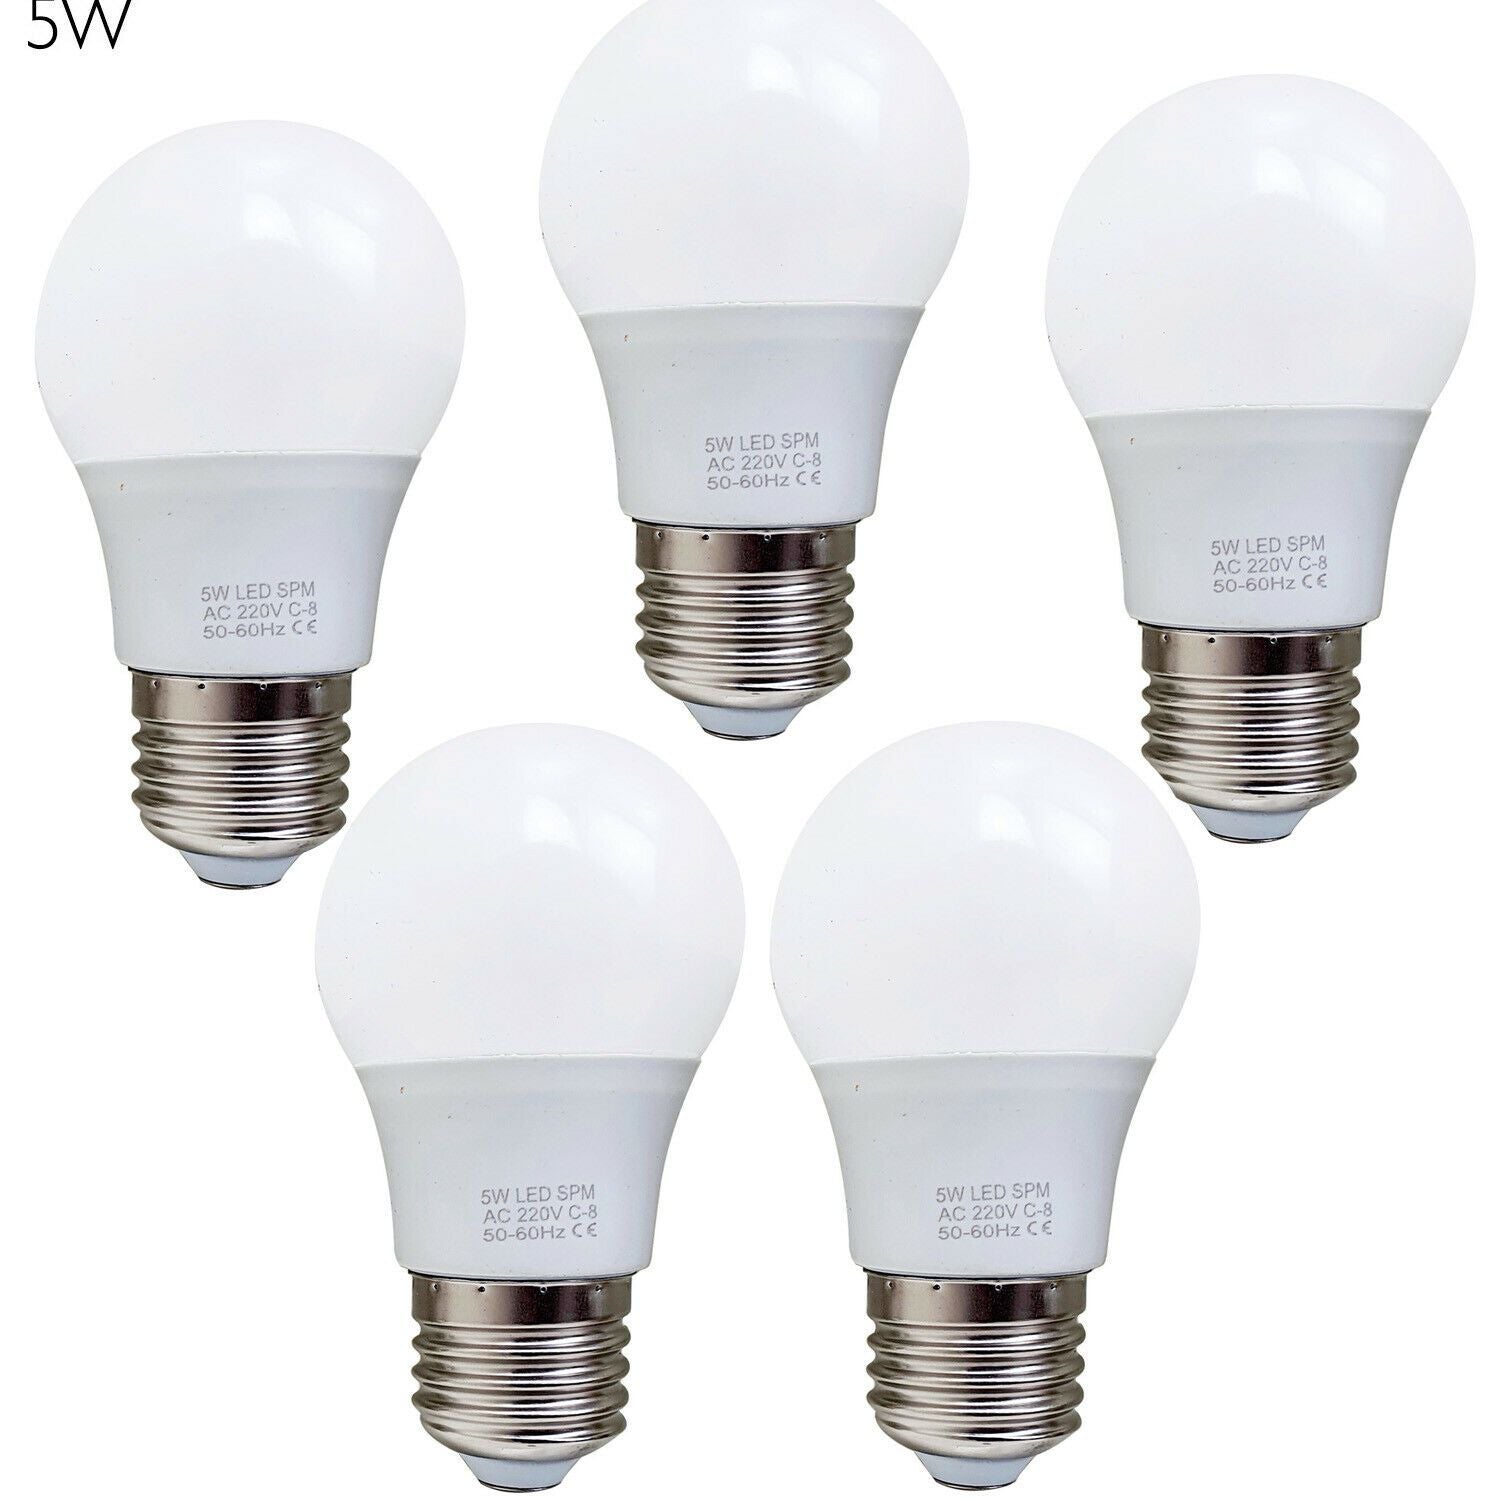 LEDs vs. Incandescent Lights - The Lightbulb Co. UK